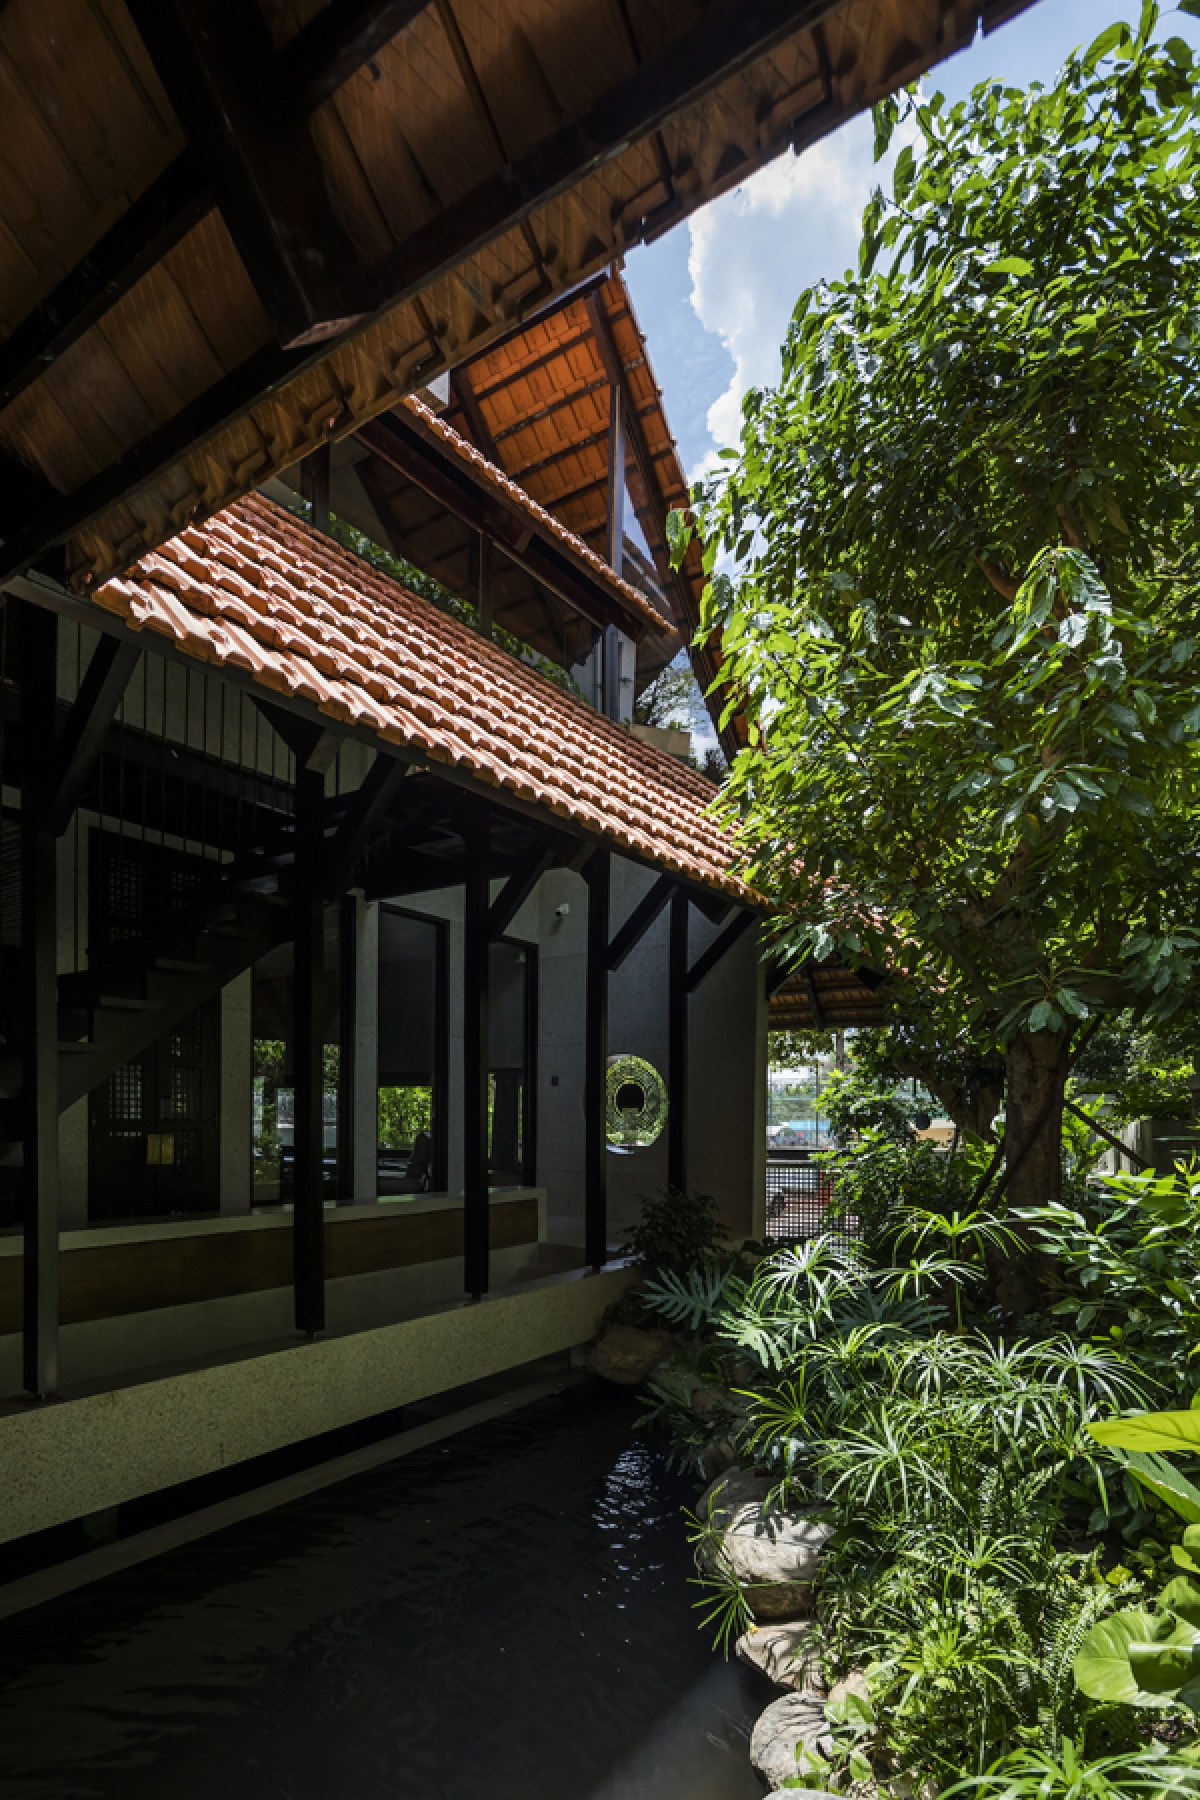 Kiến trúc công trình được thiết kế dựa trên sự kế thừa của kiến trúc truyền thống, kết hợp hài hòa với cảnh quan cây xanh, mặt nước.